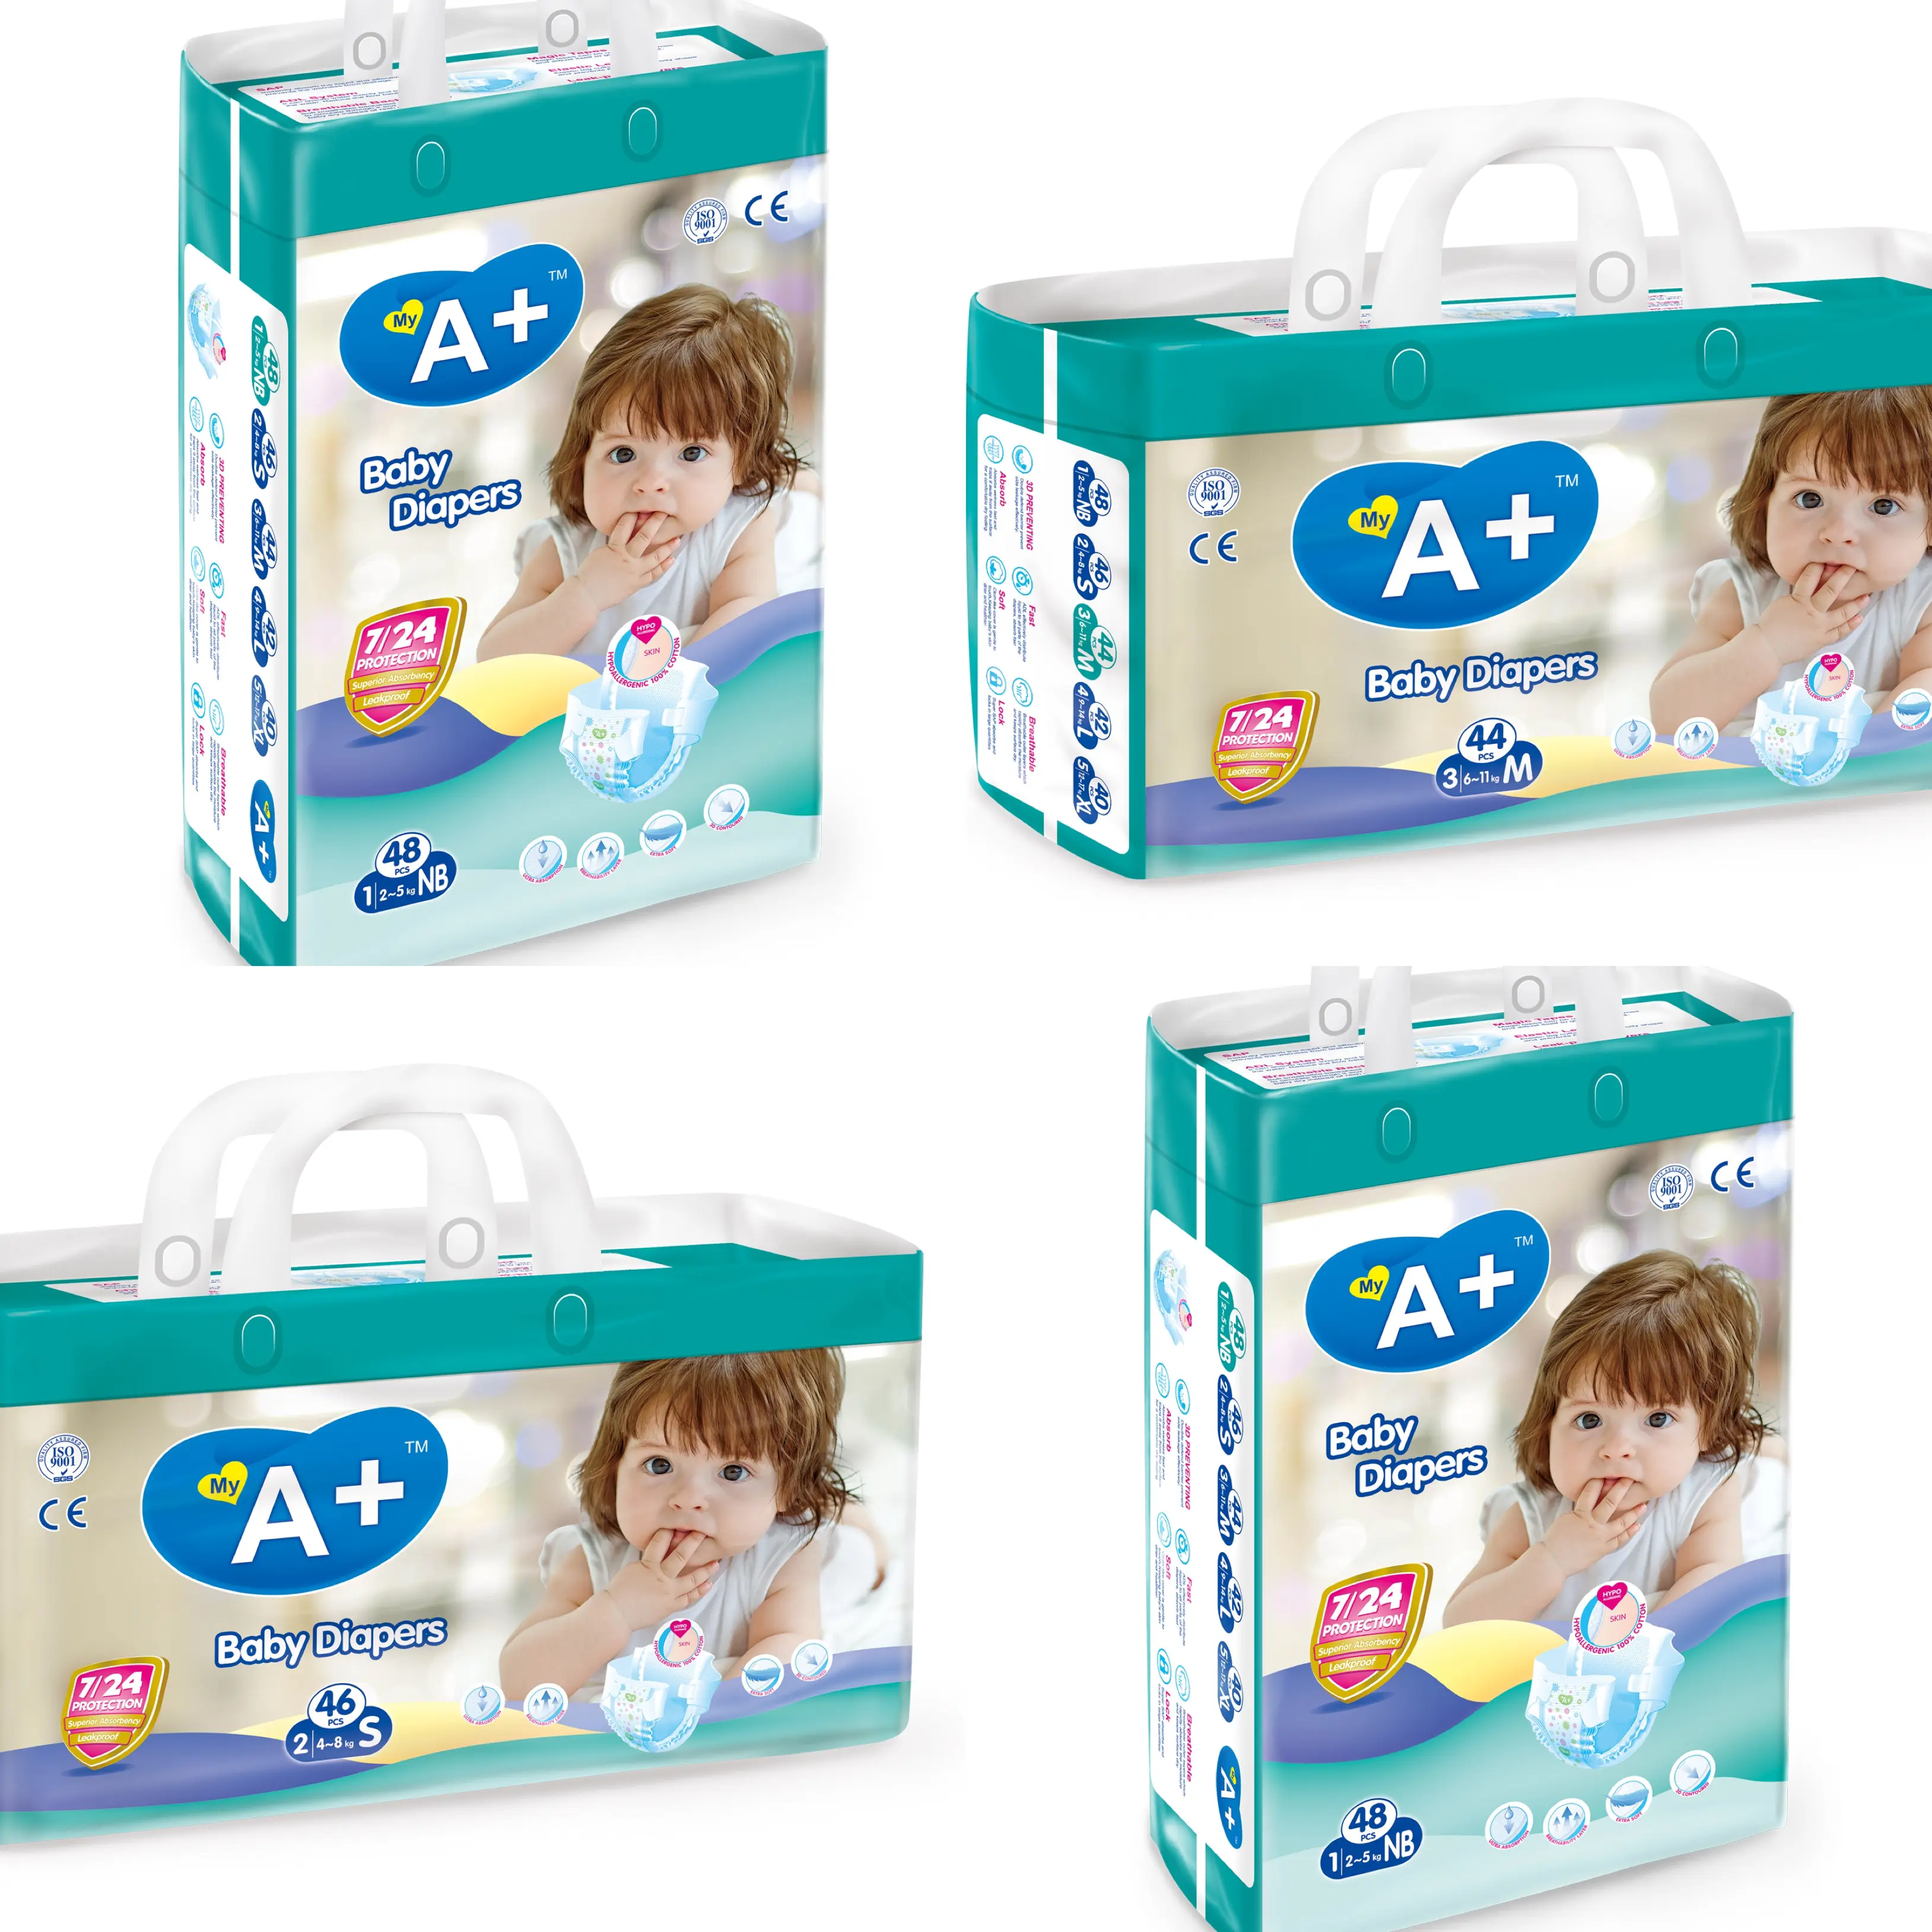 Sampel gratis popok bayi Super lembut non-tenun udara panas bahan baru